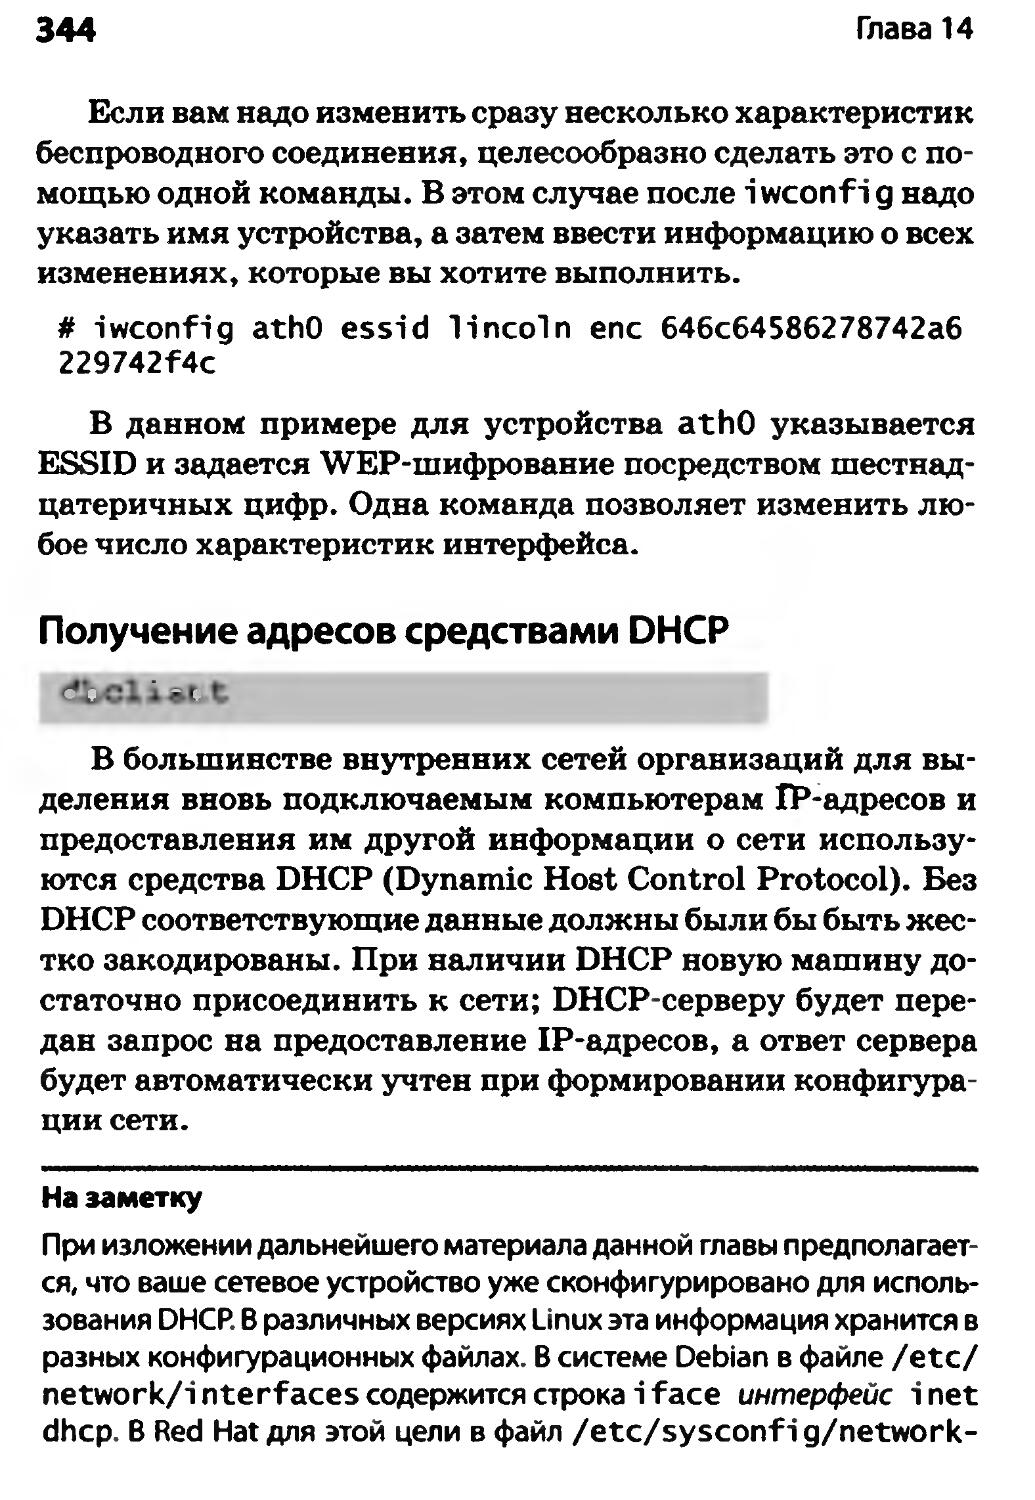 Получение адресов средствами DHCP